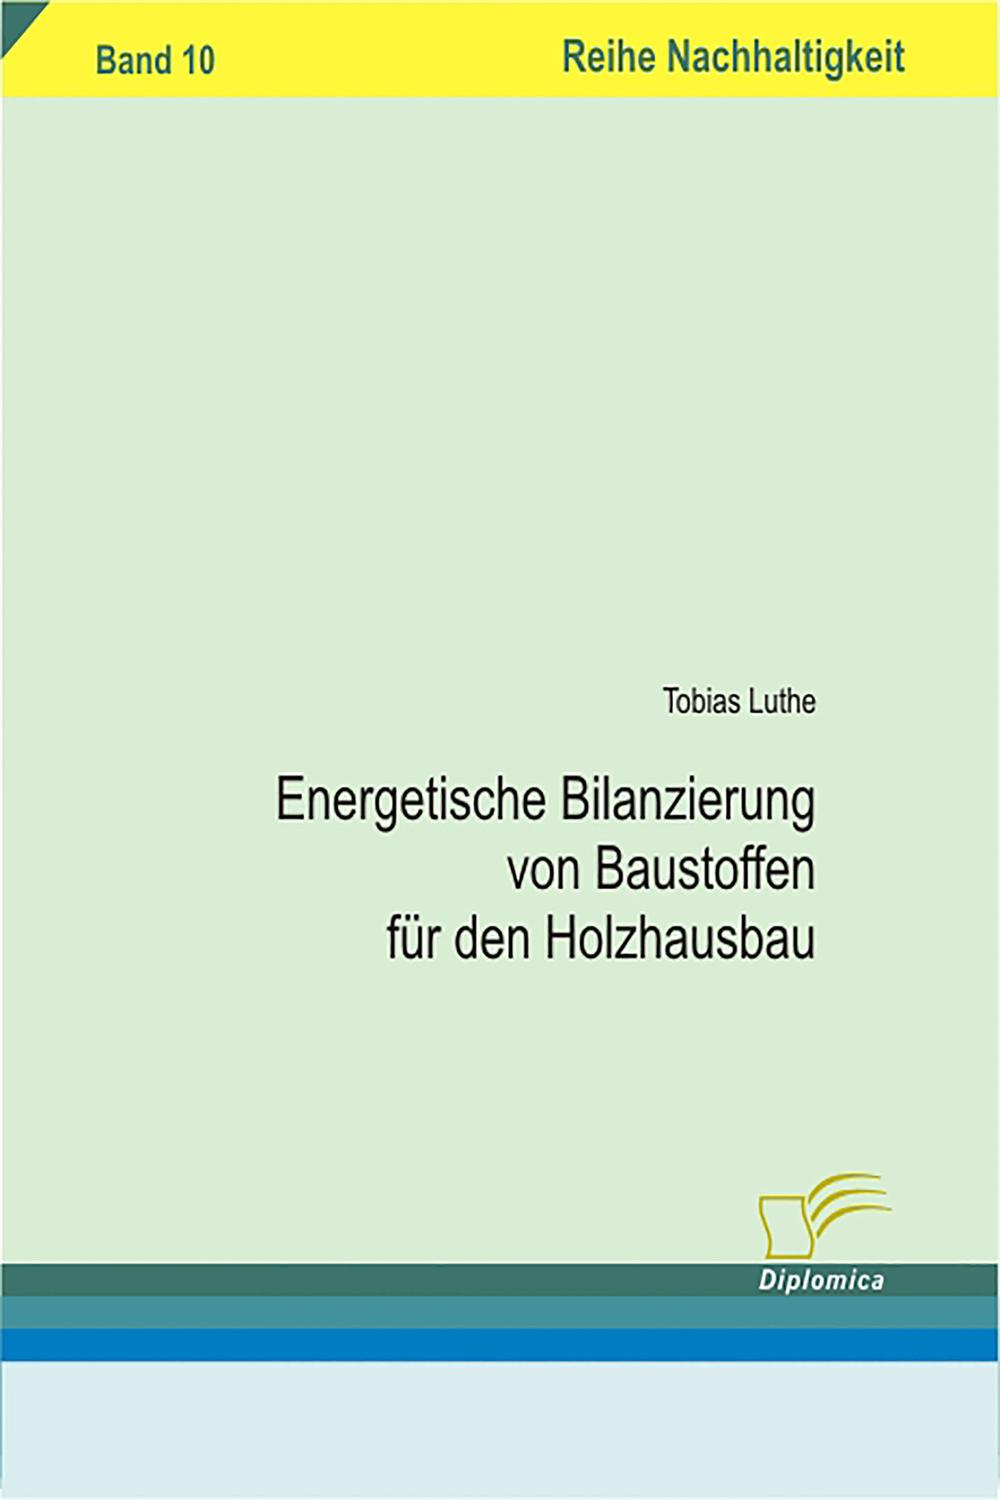 Energetische Bilanzierung von Baustoffen für den Holzhausbau - Tobias Luthe